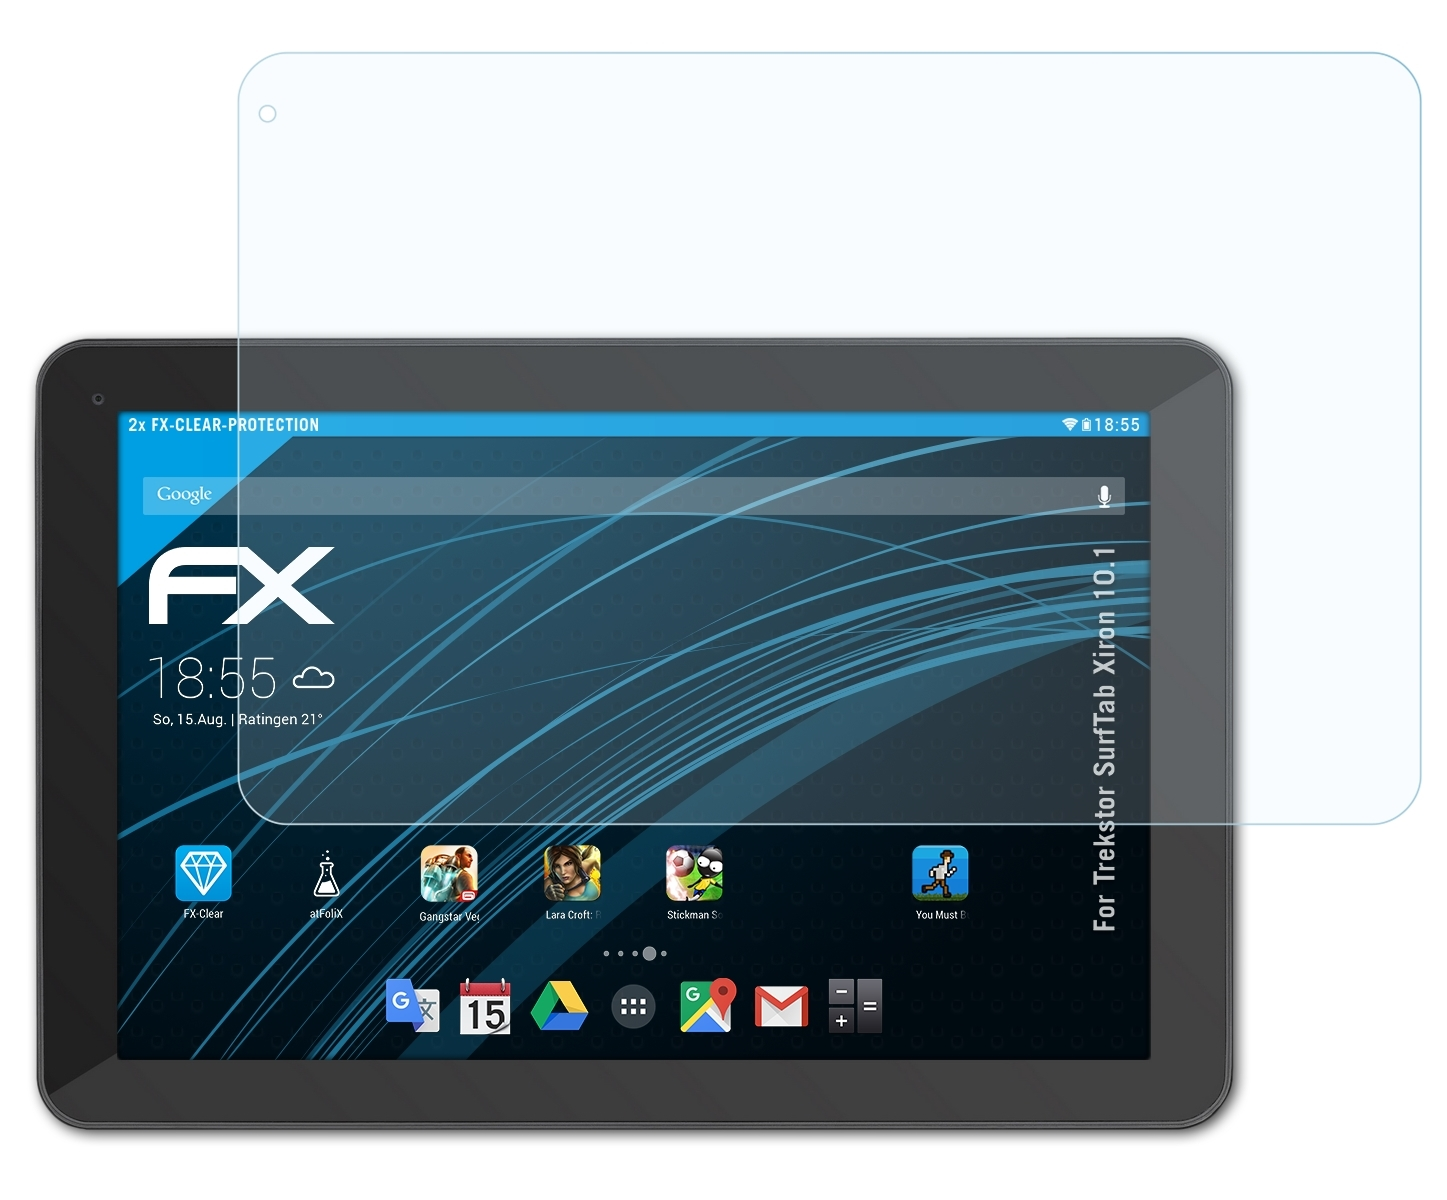 ATFOLIX 2x FX-Clear 10.1) SurfTab Trekstor Xiron Displayschutz(für